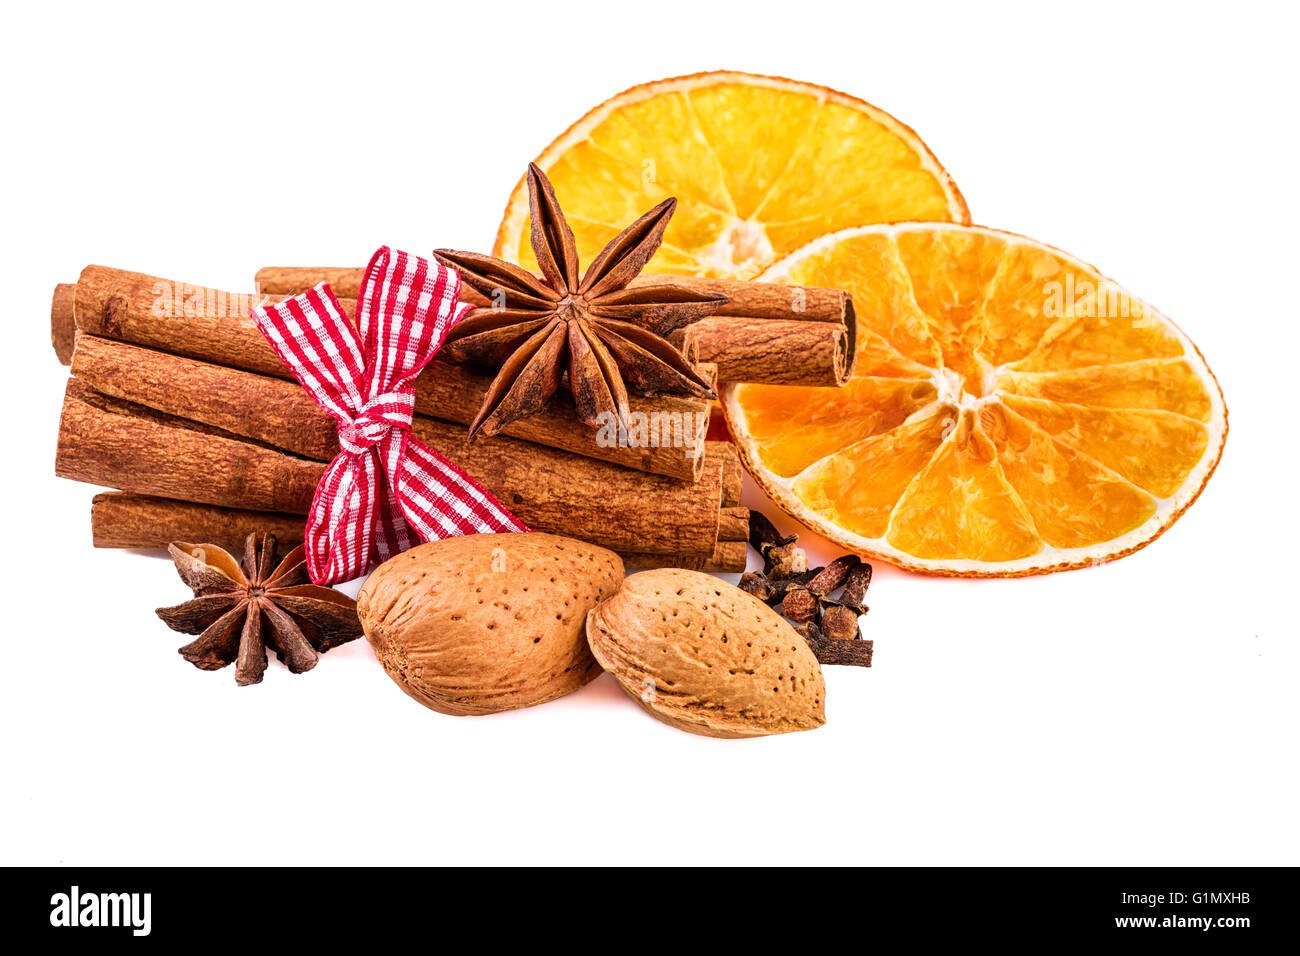 Épices de Noël cannelle, anis, girofle, noix d'amandes séchées et des tranches d'orange. Banque D'Images